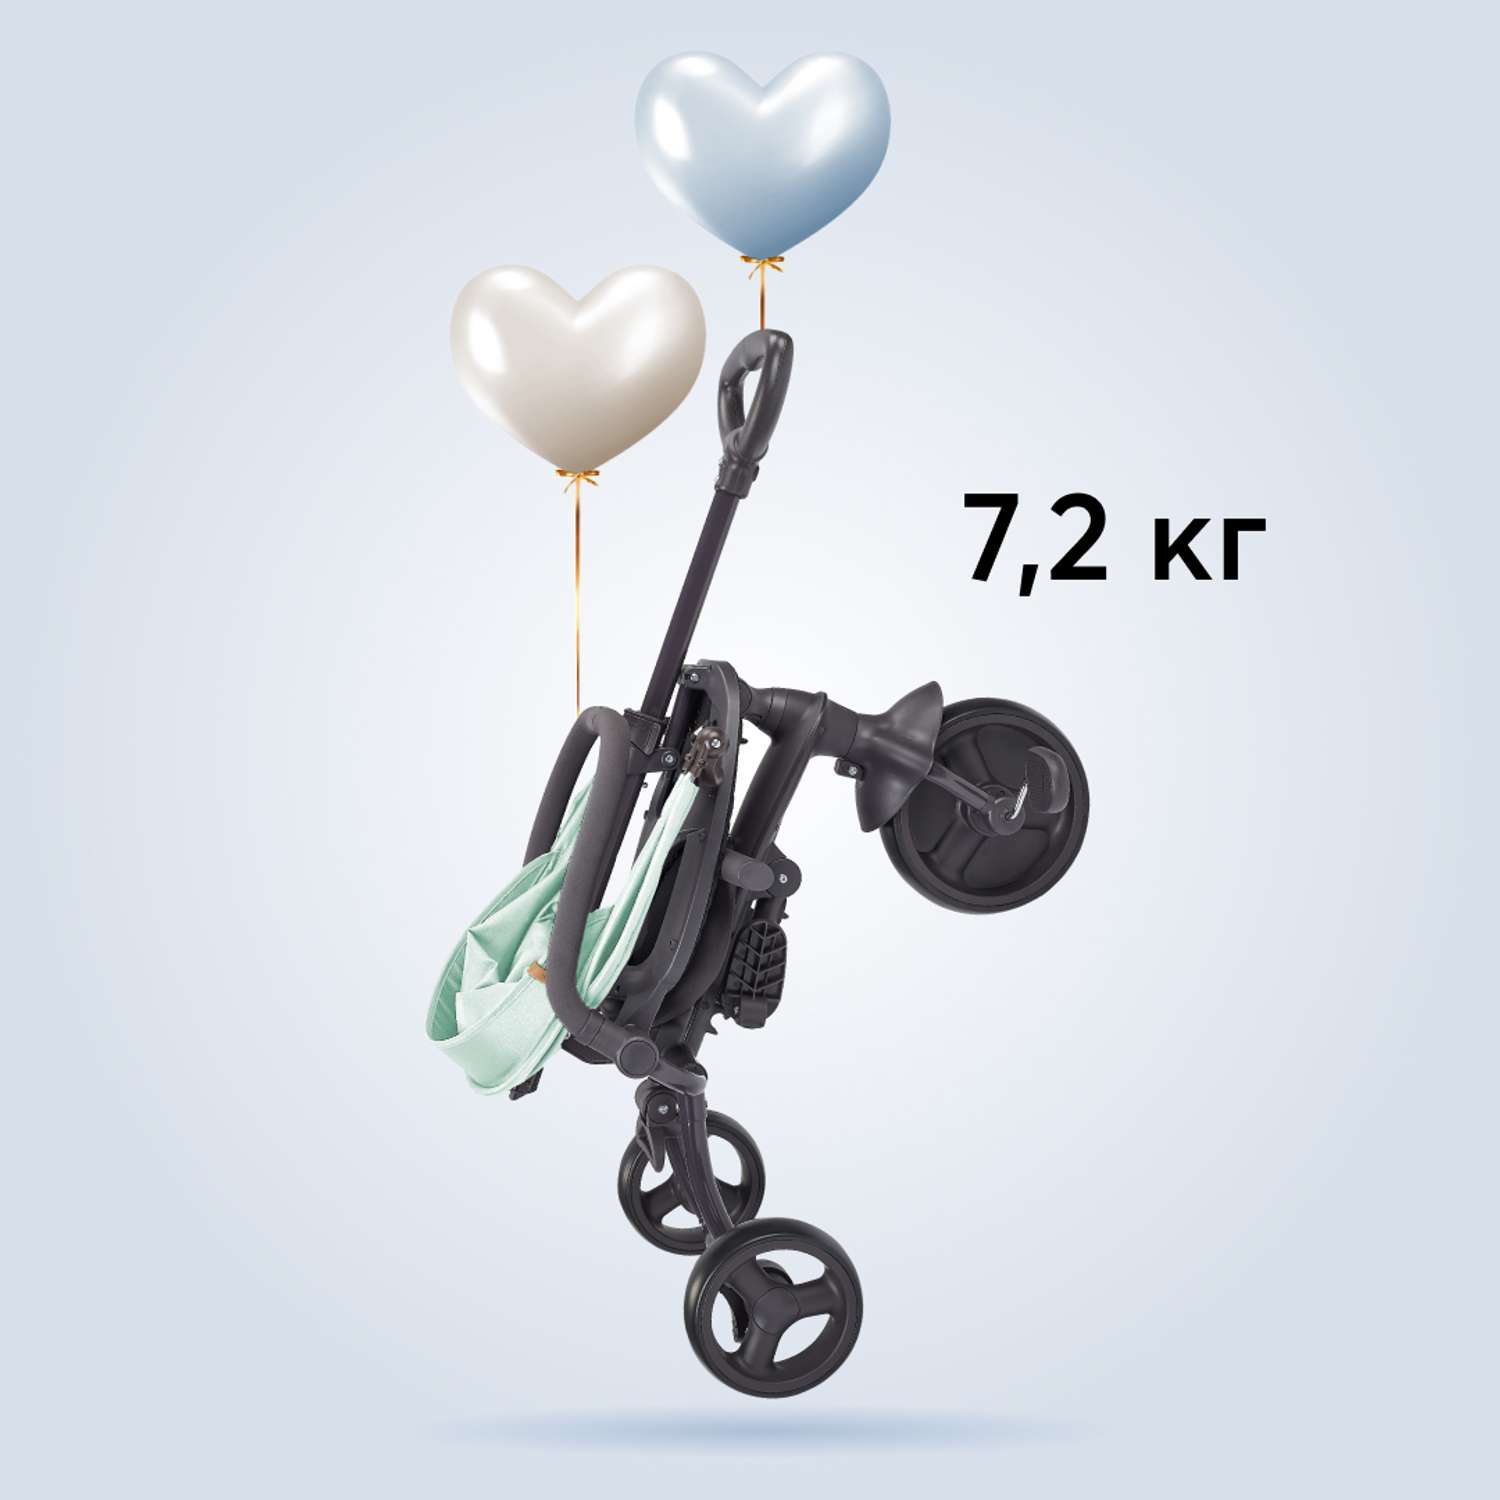 Велосипед Happy Baby. Happy Baby велосипед с зонтиком. Велосипед Happy Baby Voyager. Трёхколёсный Mercury Pro. Happy baby mercury